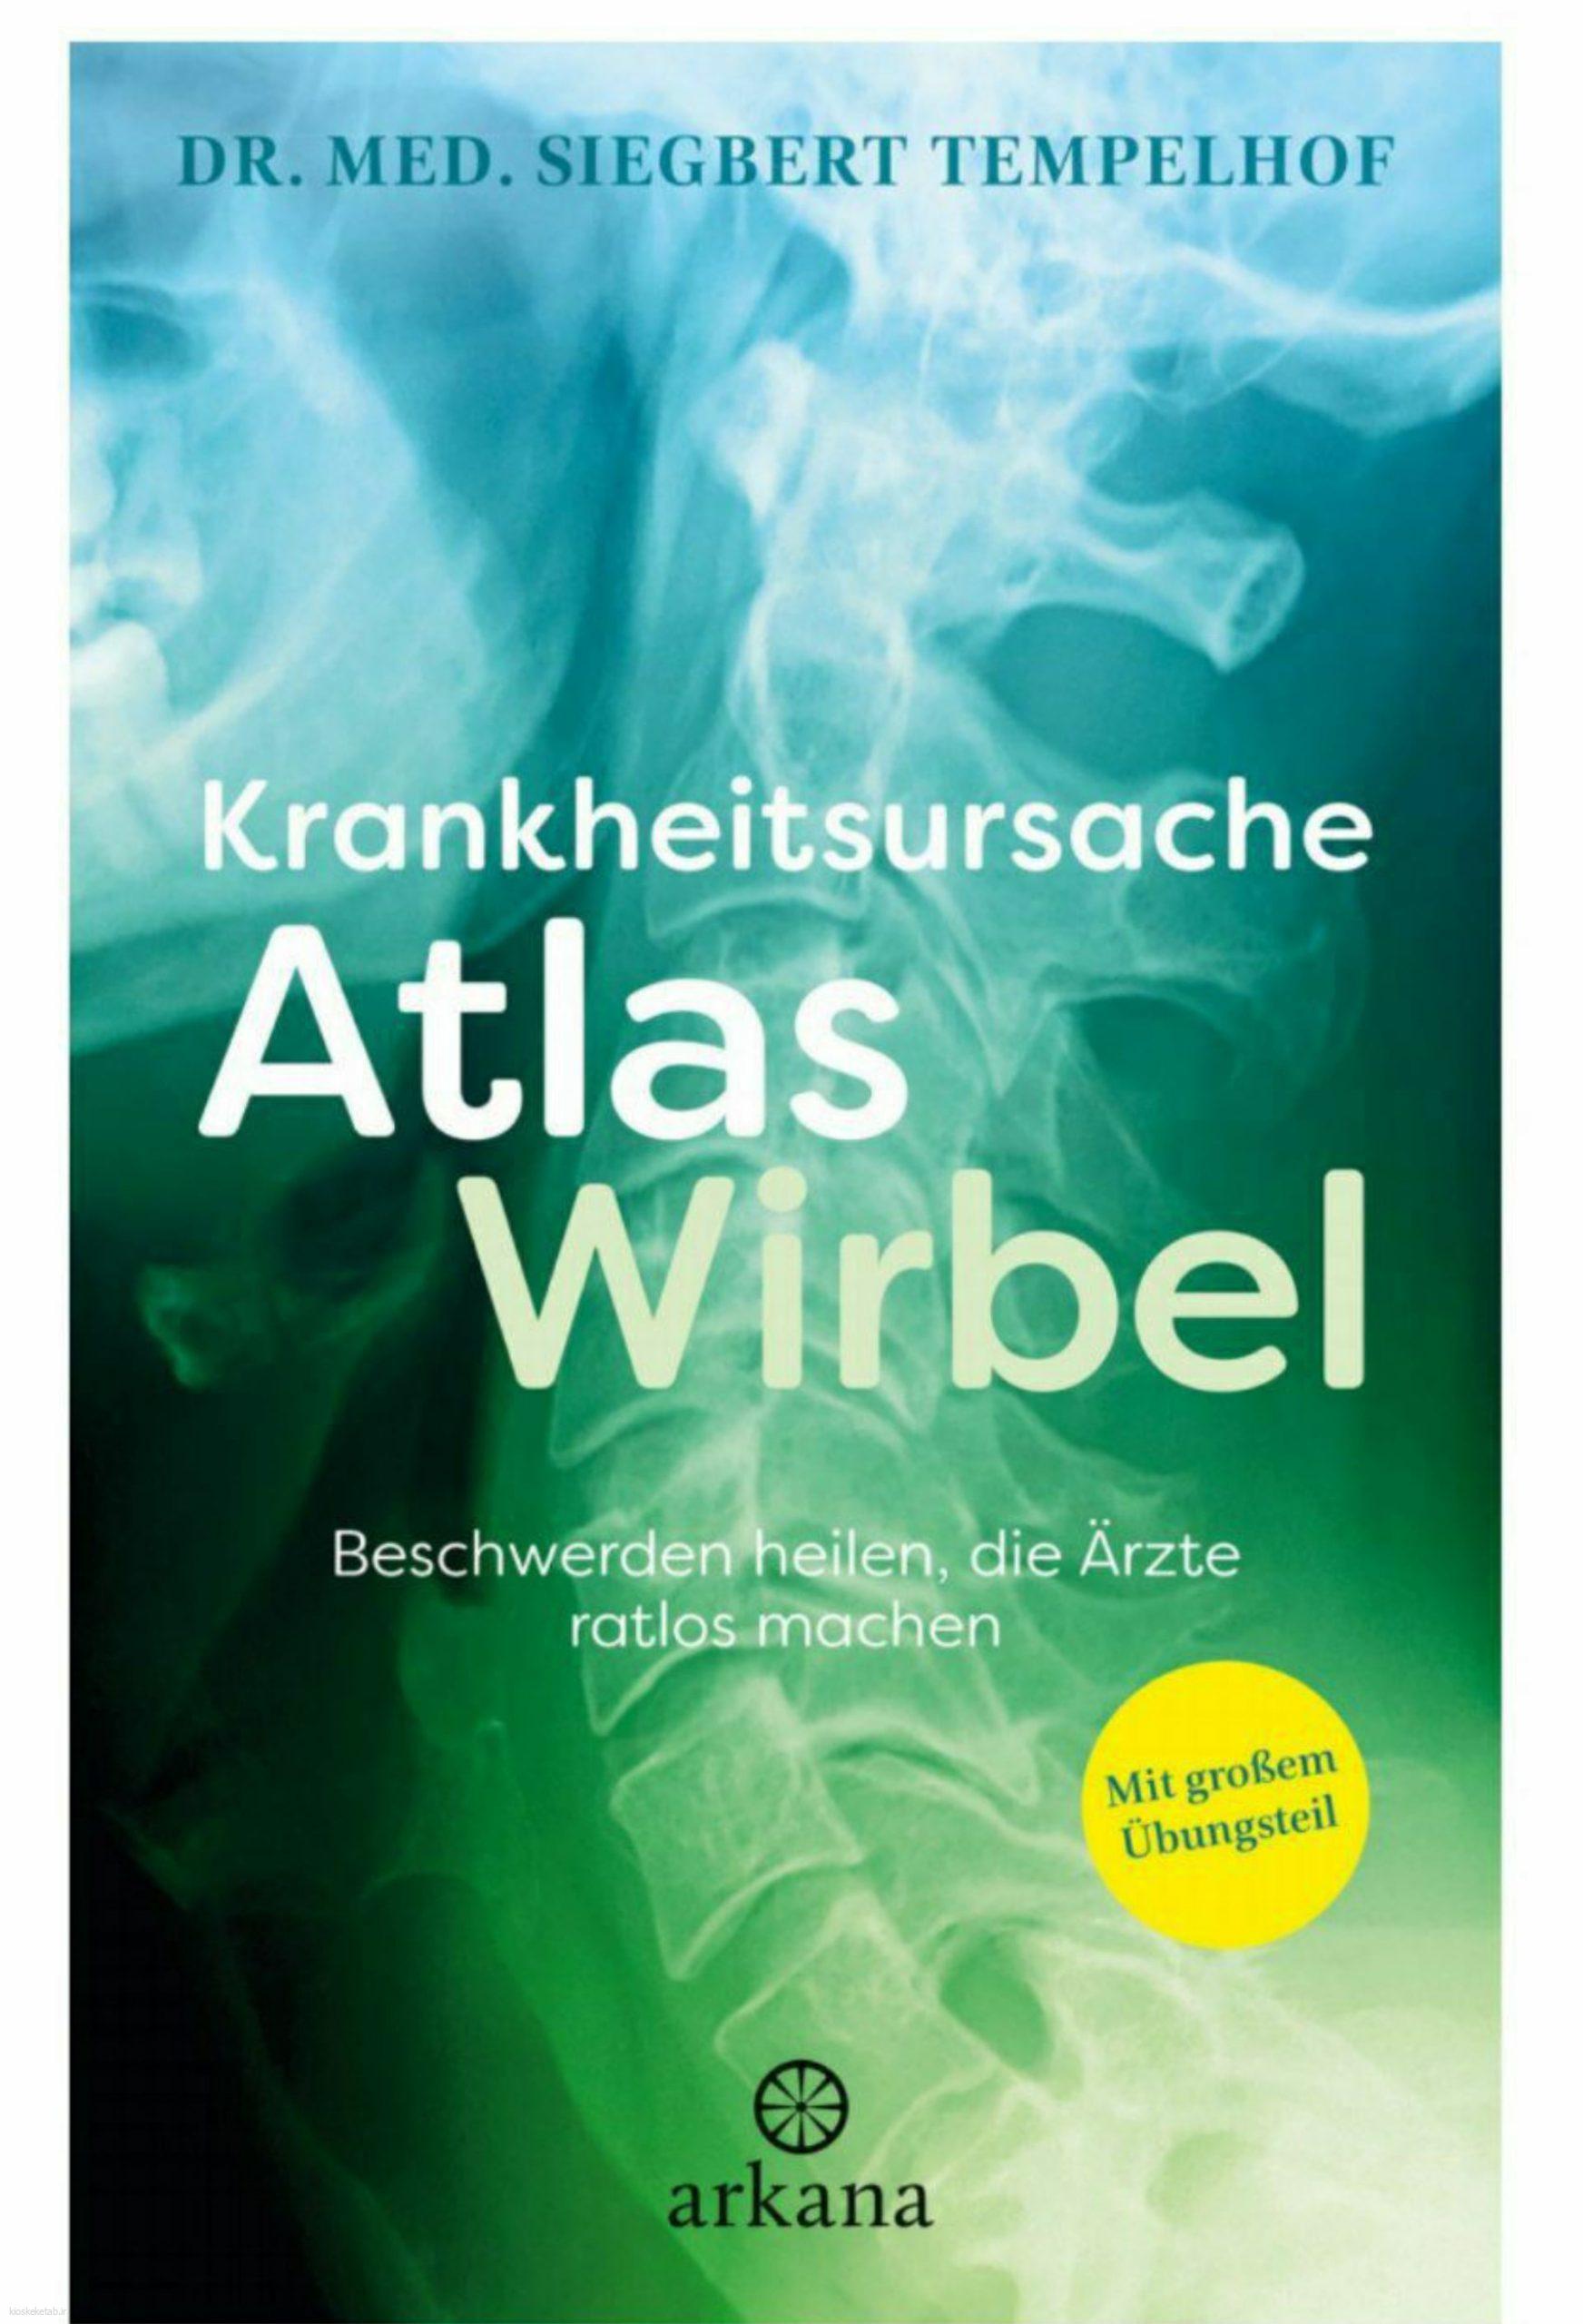 دانلود کتاب آلمانیkrankheitsursache atlaswirbel